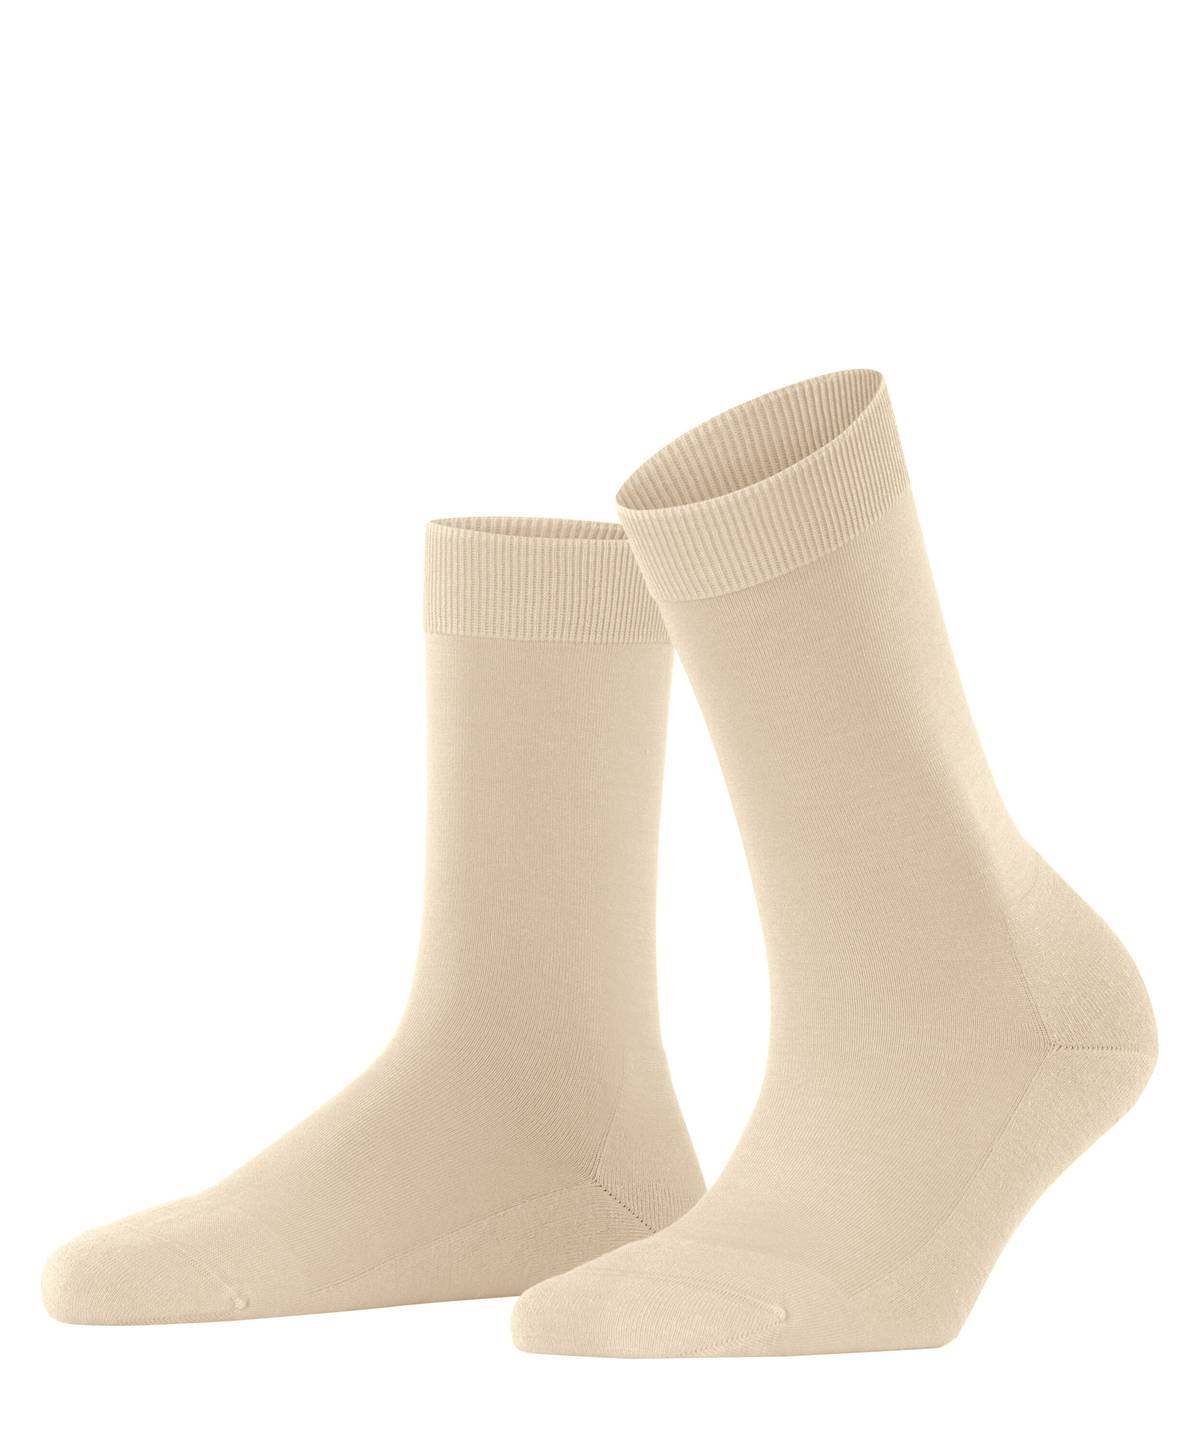 FALKE Kurzsocken Socken Creme einfarbig Kurzsocken, Damen ClimaWool, 